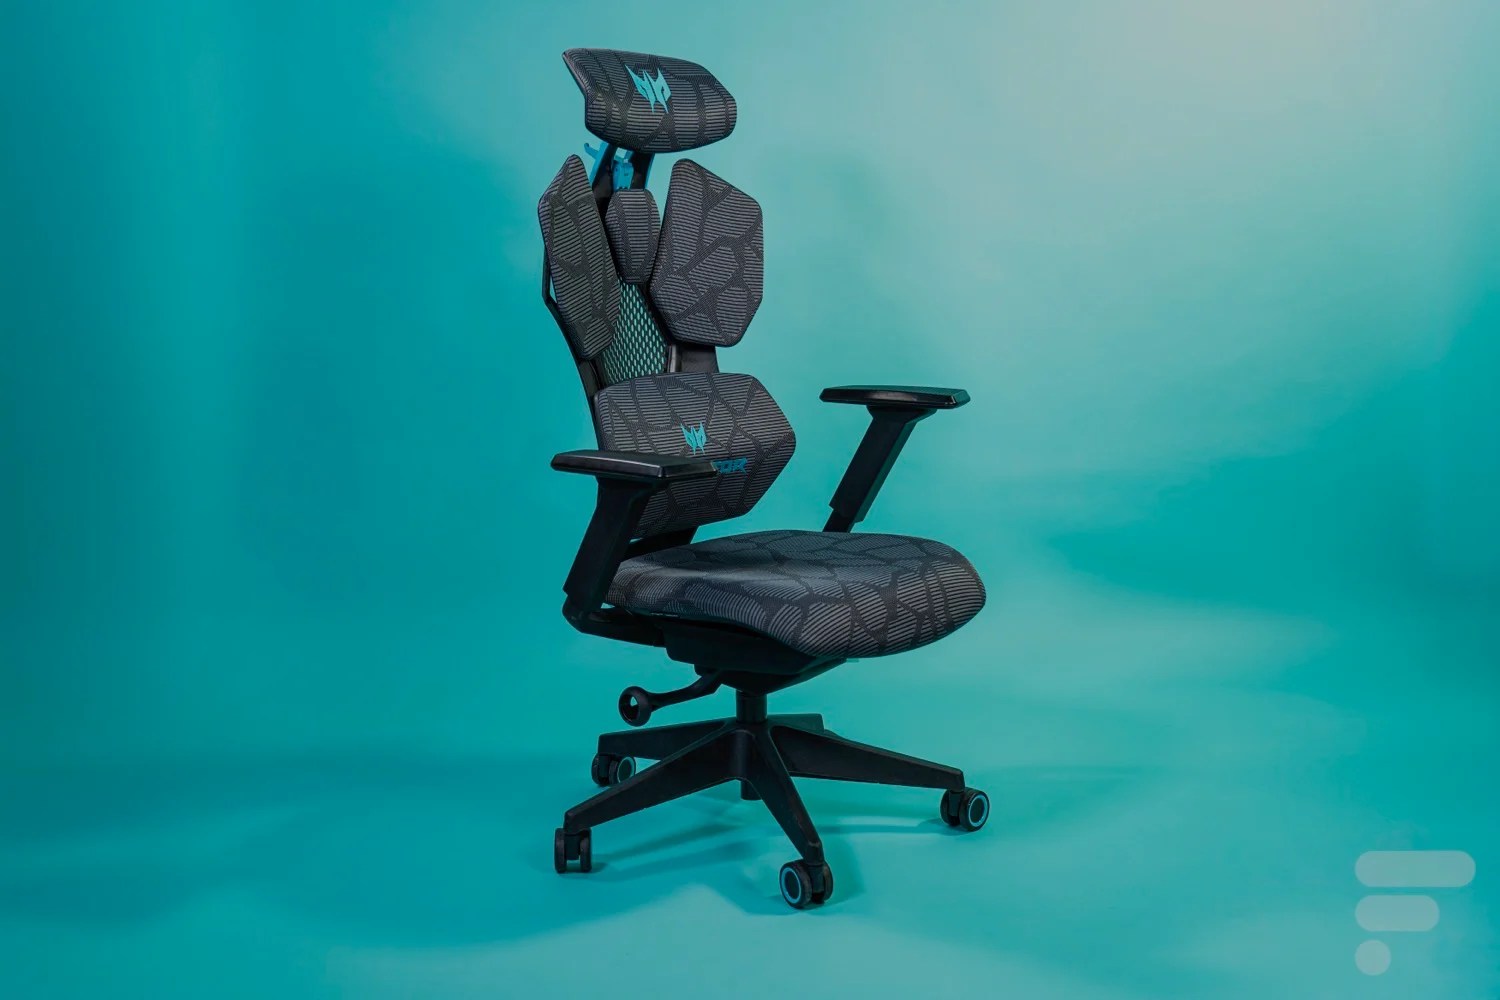 Test de la Acer Predator Cosmos : une chaise gaming au design audacieux mais plutôt confortable